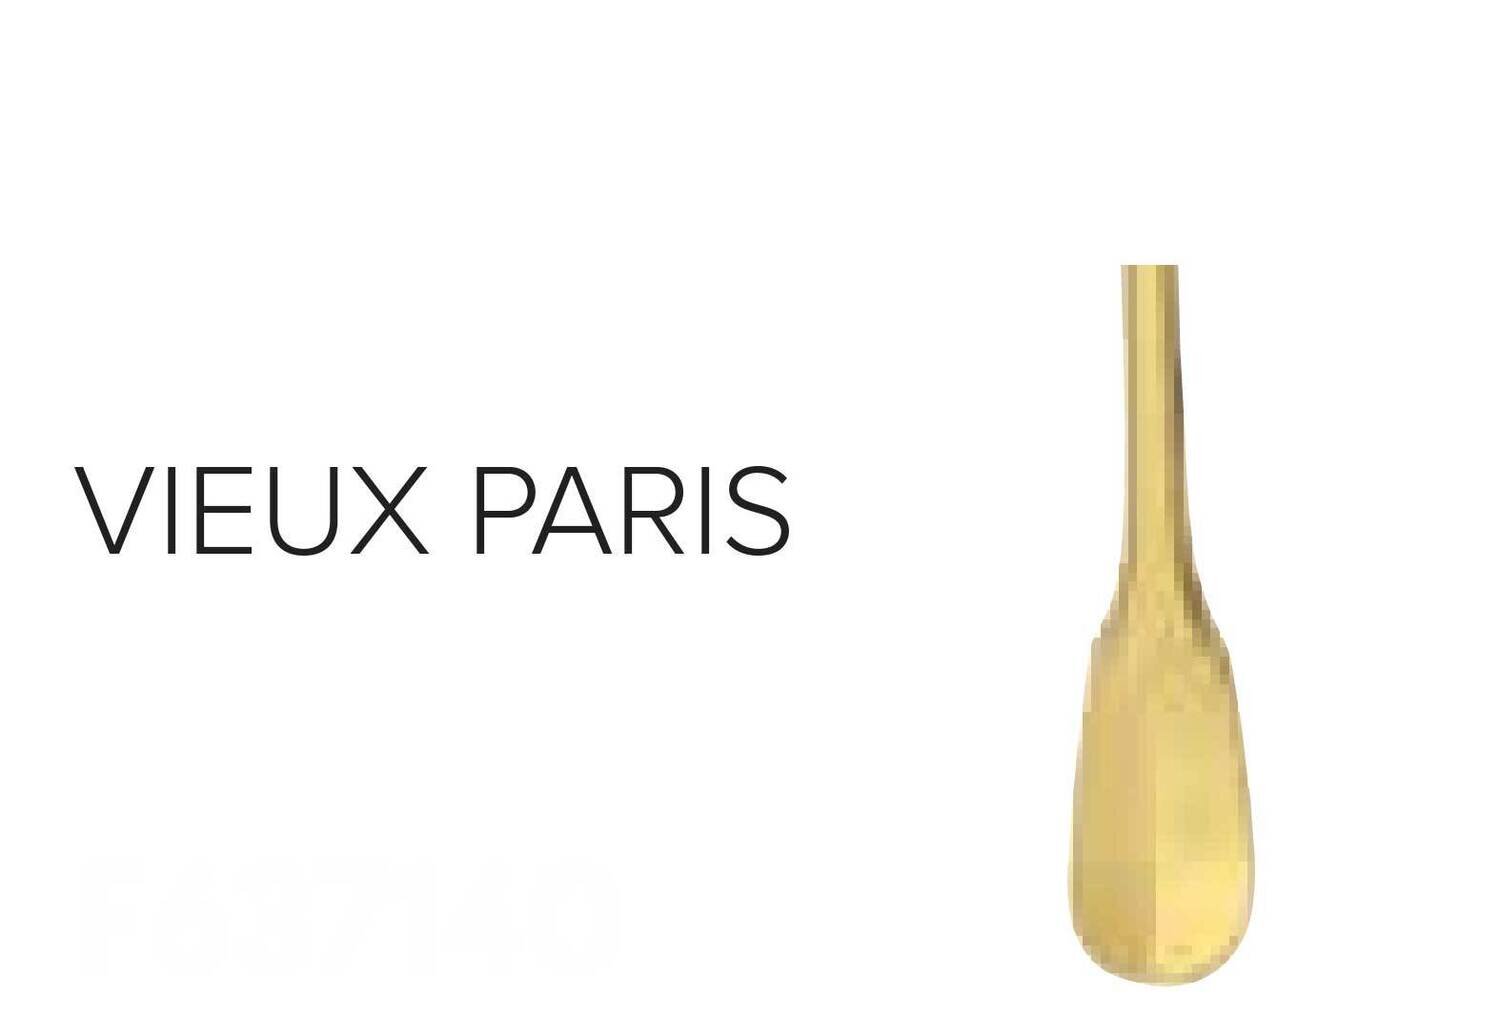 Ercuis Vieux Paris Steak Blade Dinner Knife Gold Plated F657140-S3